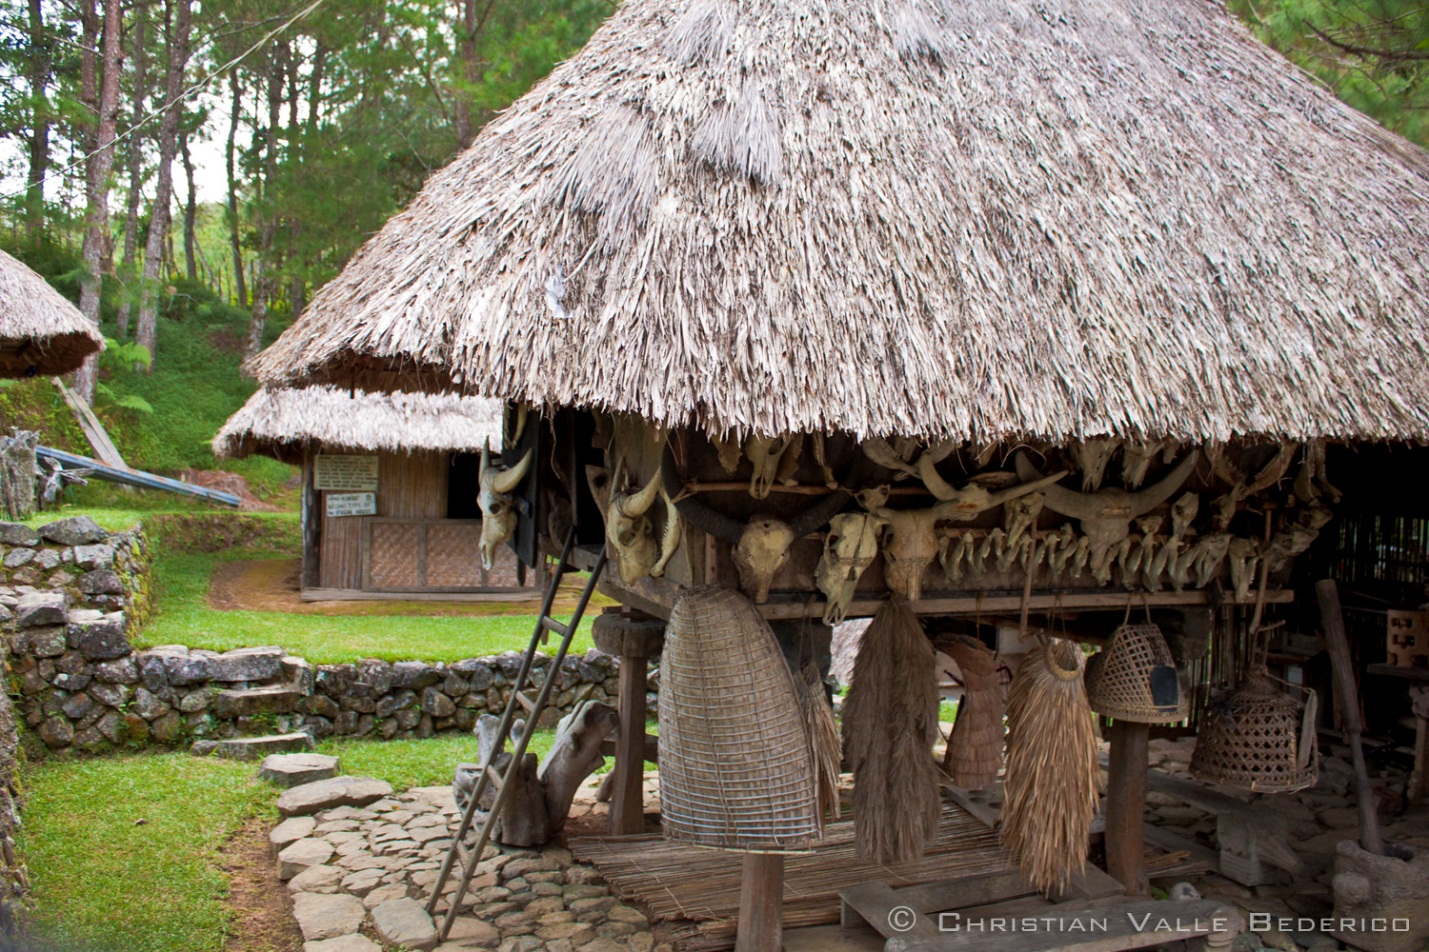 Philippines: Kỳ dị với tập tục săn đầu người của bộ tộc Ifugao - Ảnh 4.